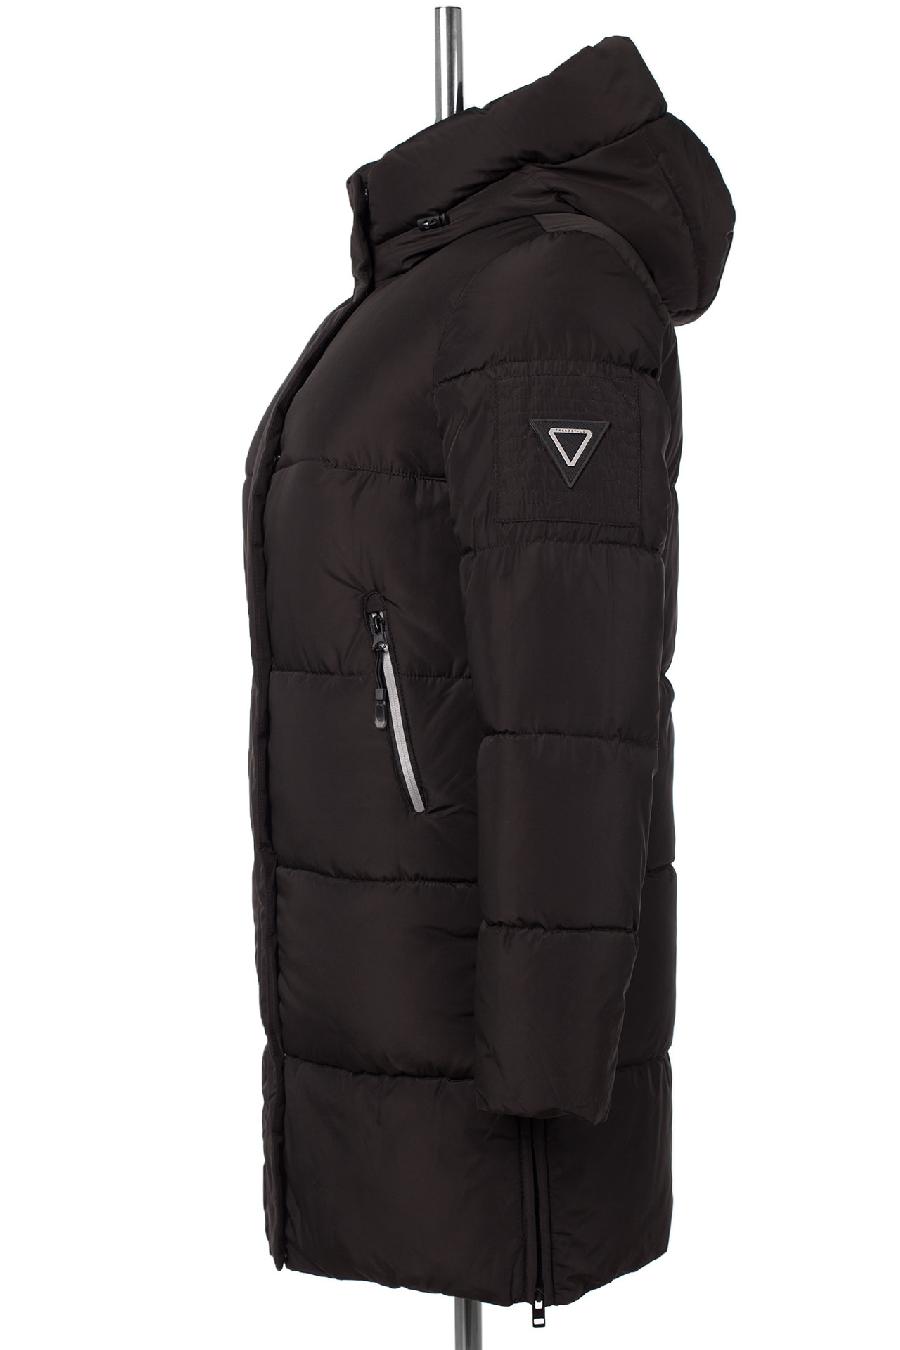 05-2072 Куртка женская зимняя SNOW (Биопух 300) Плащевка черный